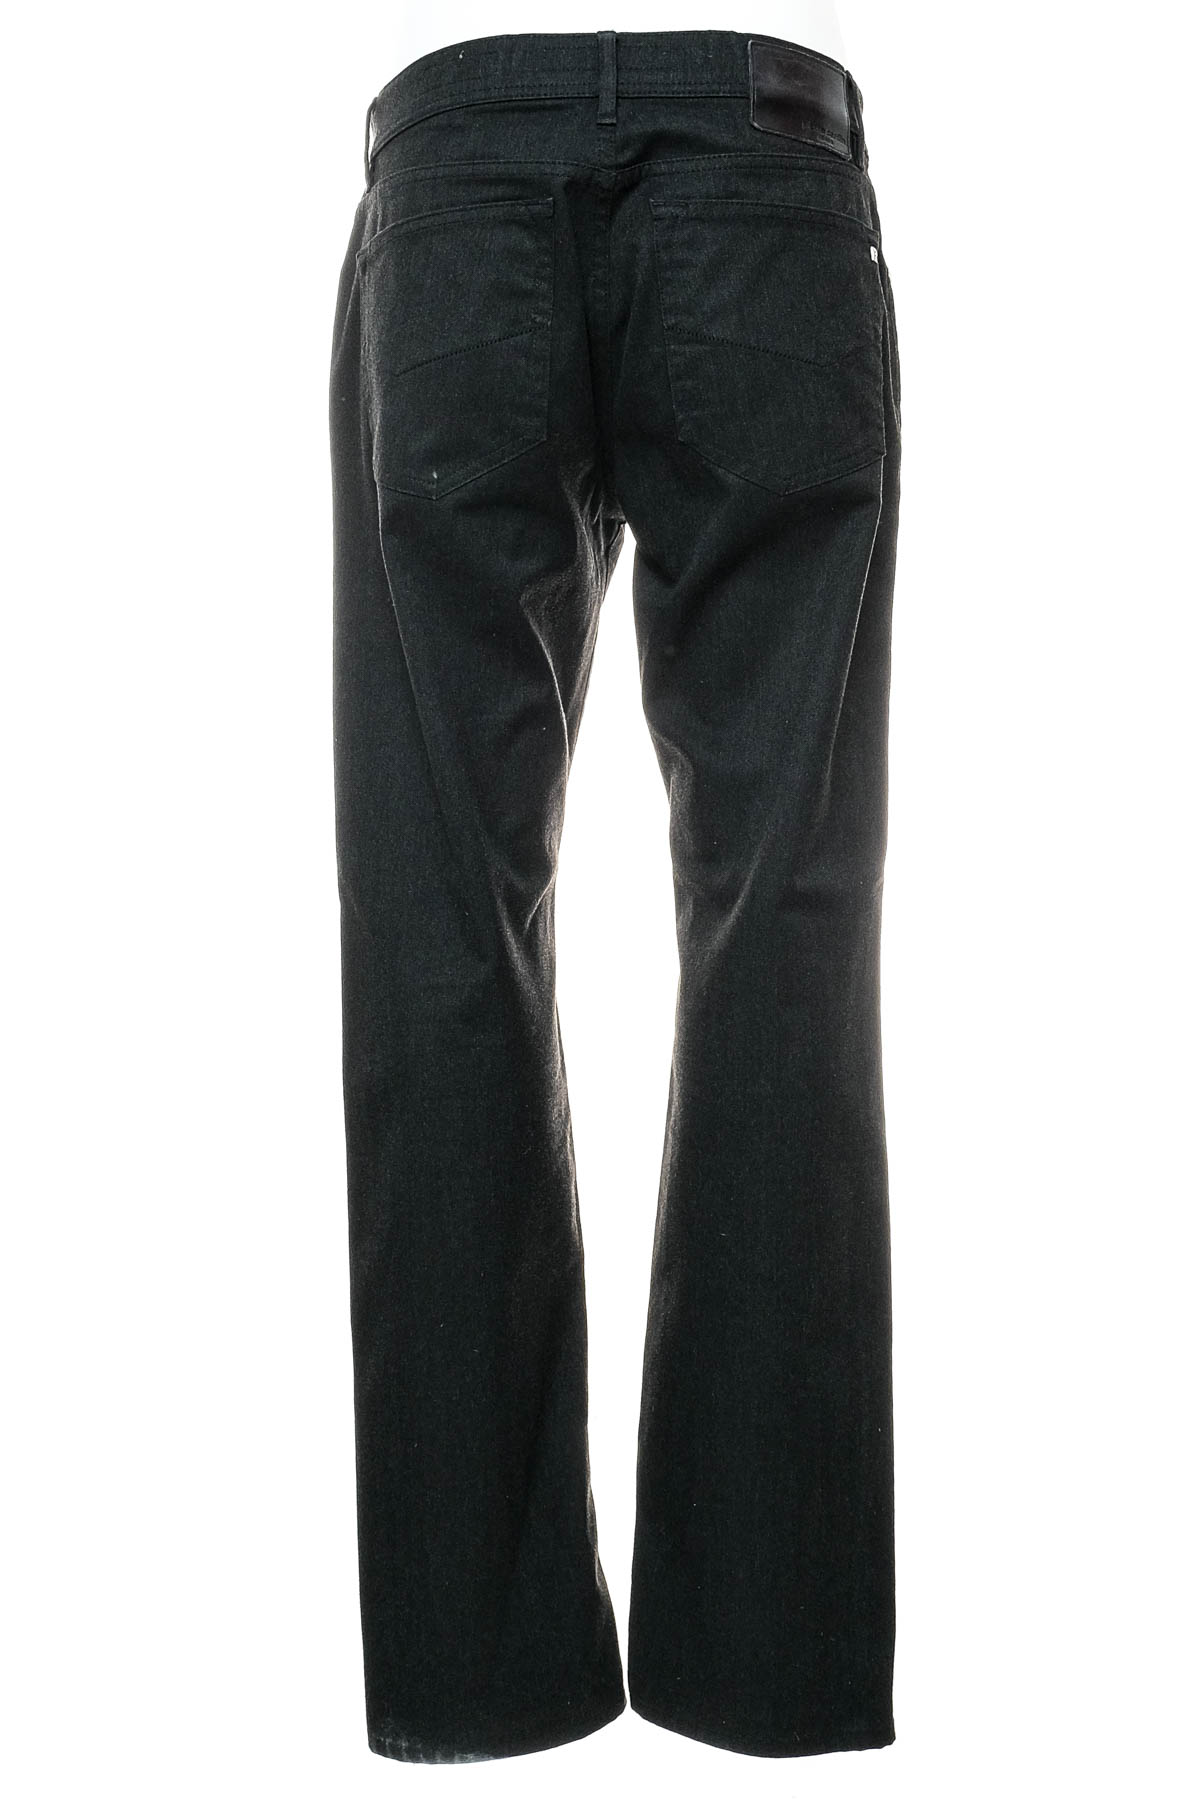 Pantalon pentru bărbați - Pierre Cardin - 1